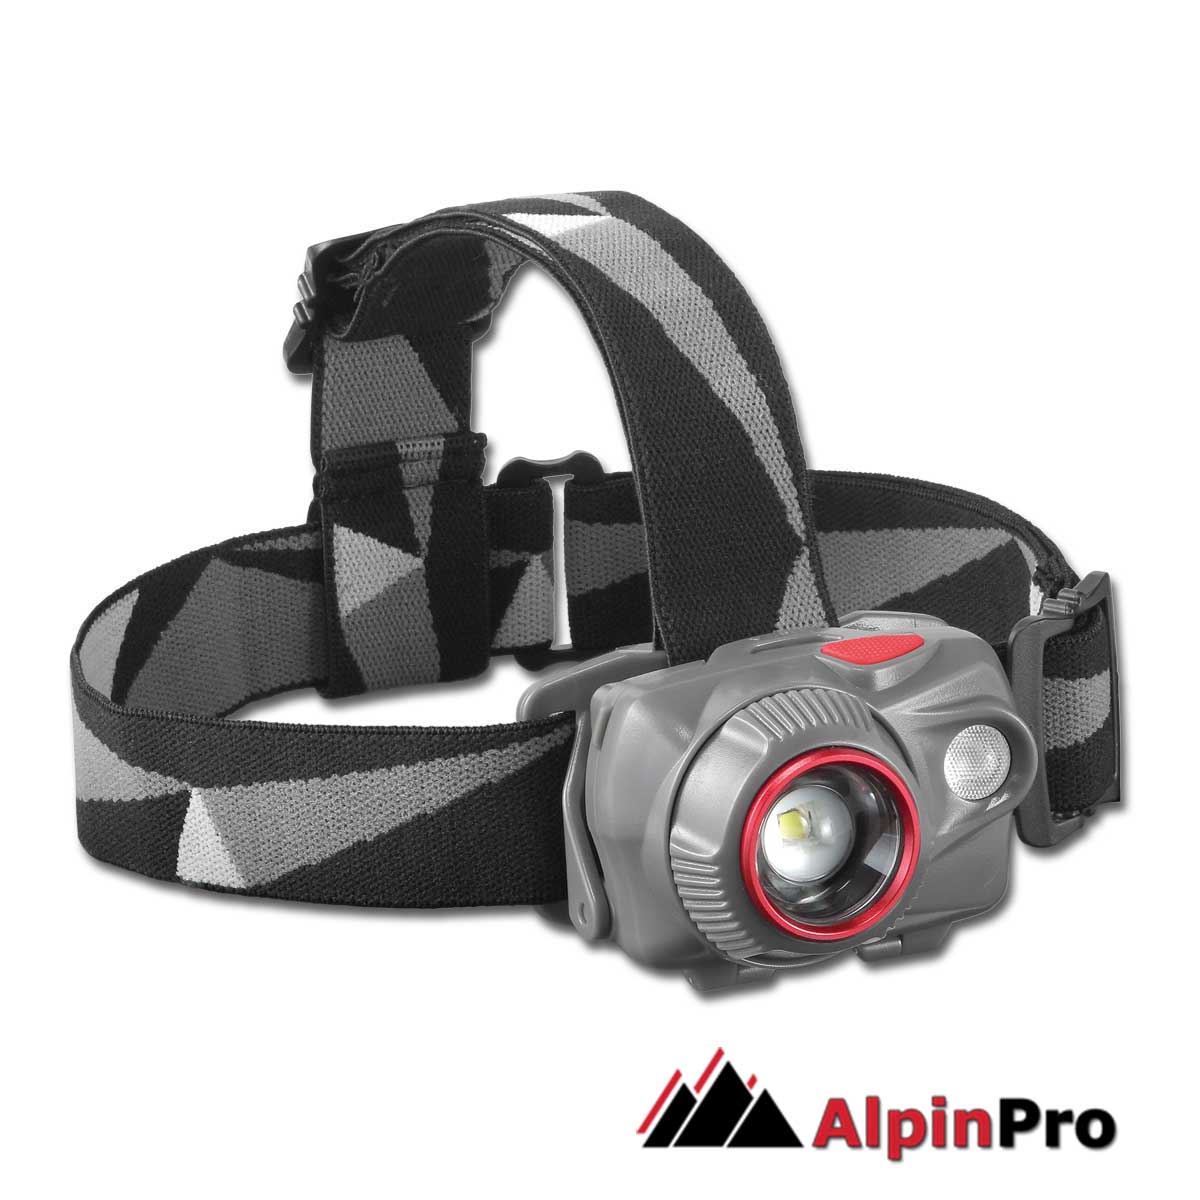 Flashlight-HL-01HB-AlpinPro - Waterproof rechargeable headlight AlpinPro